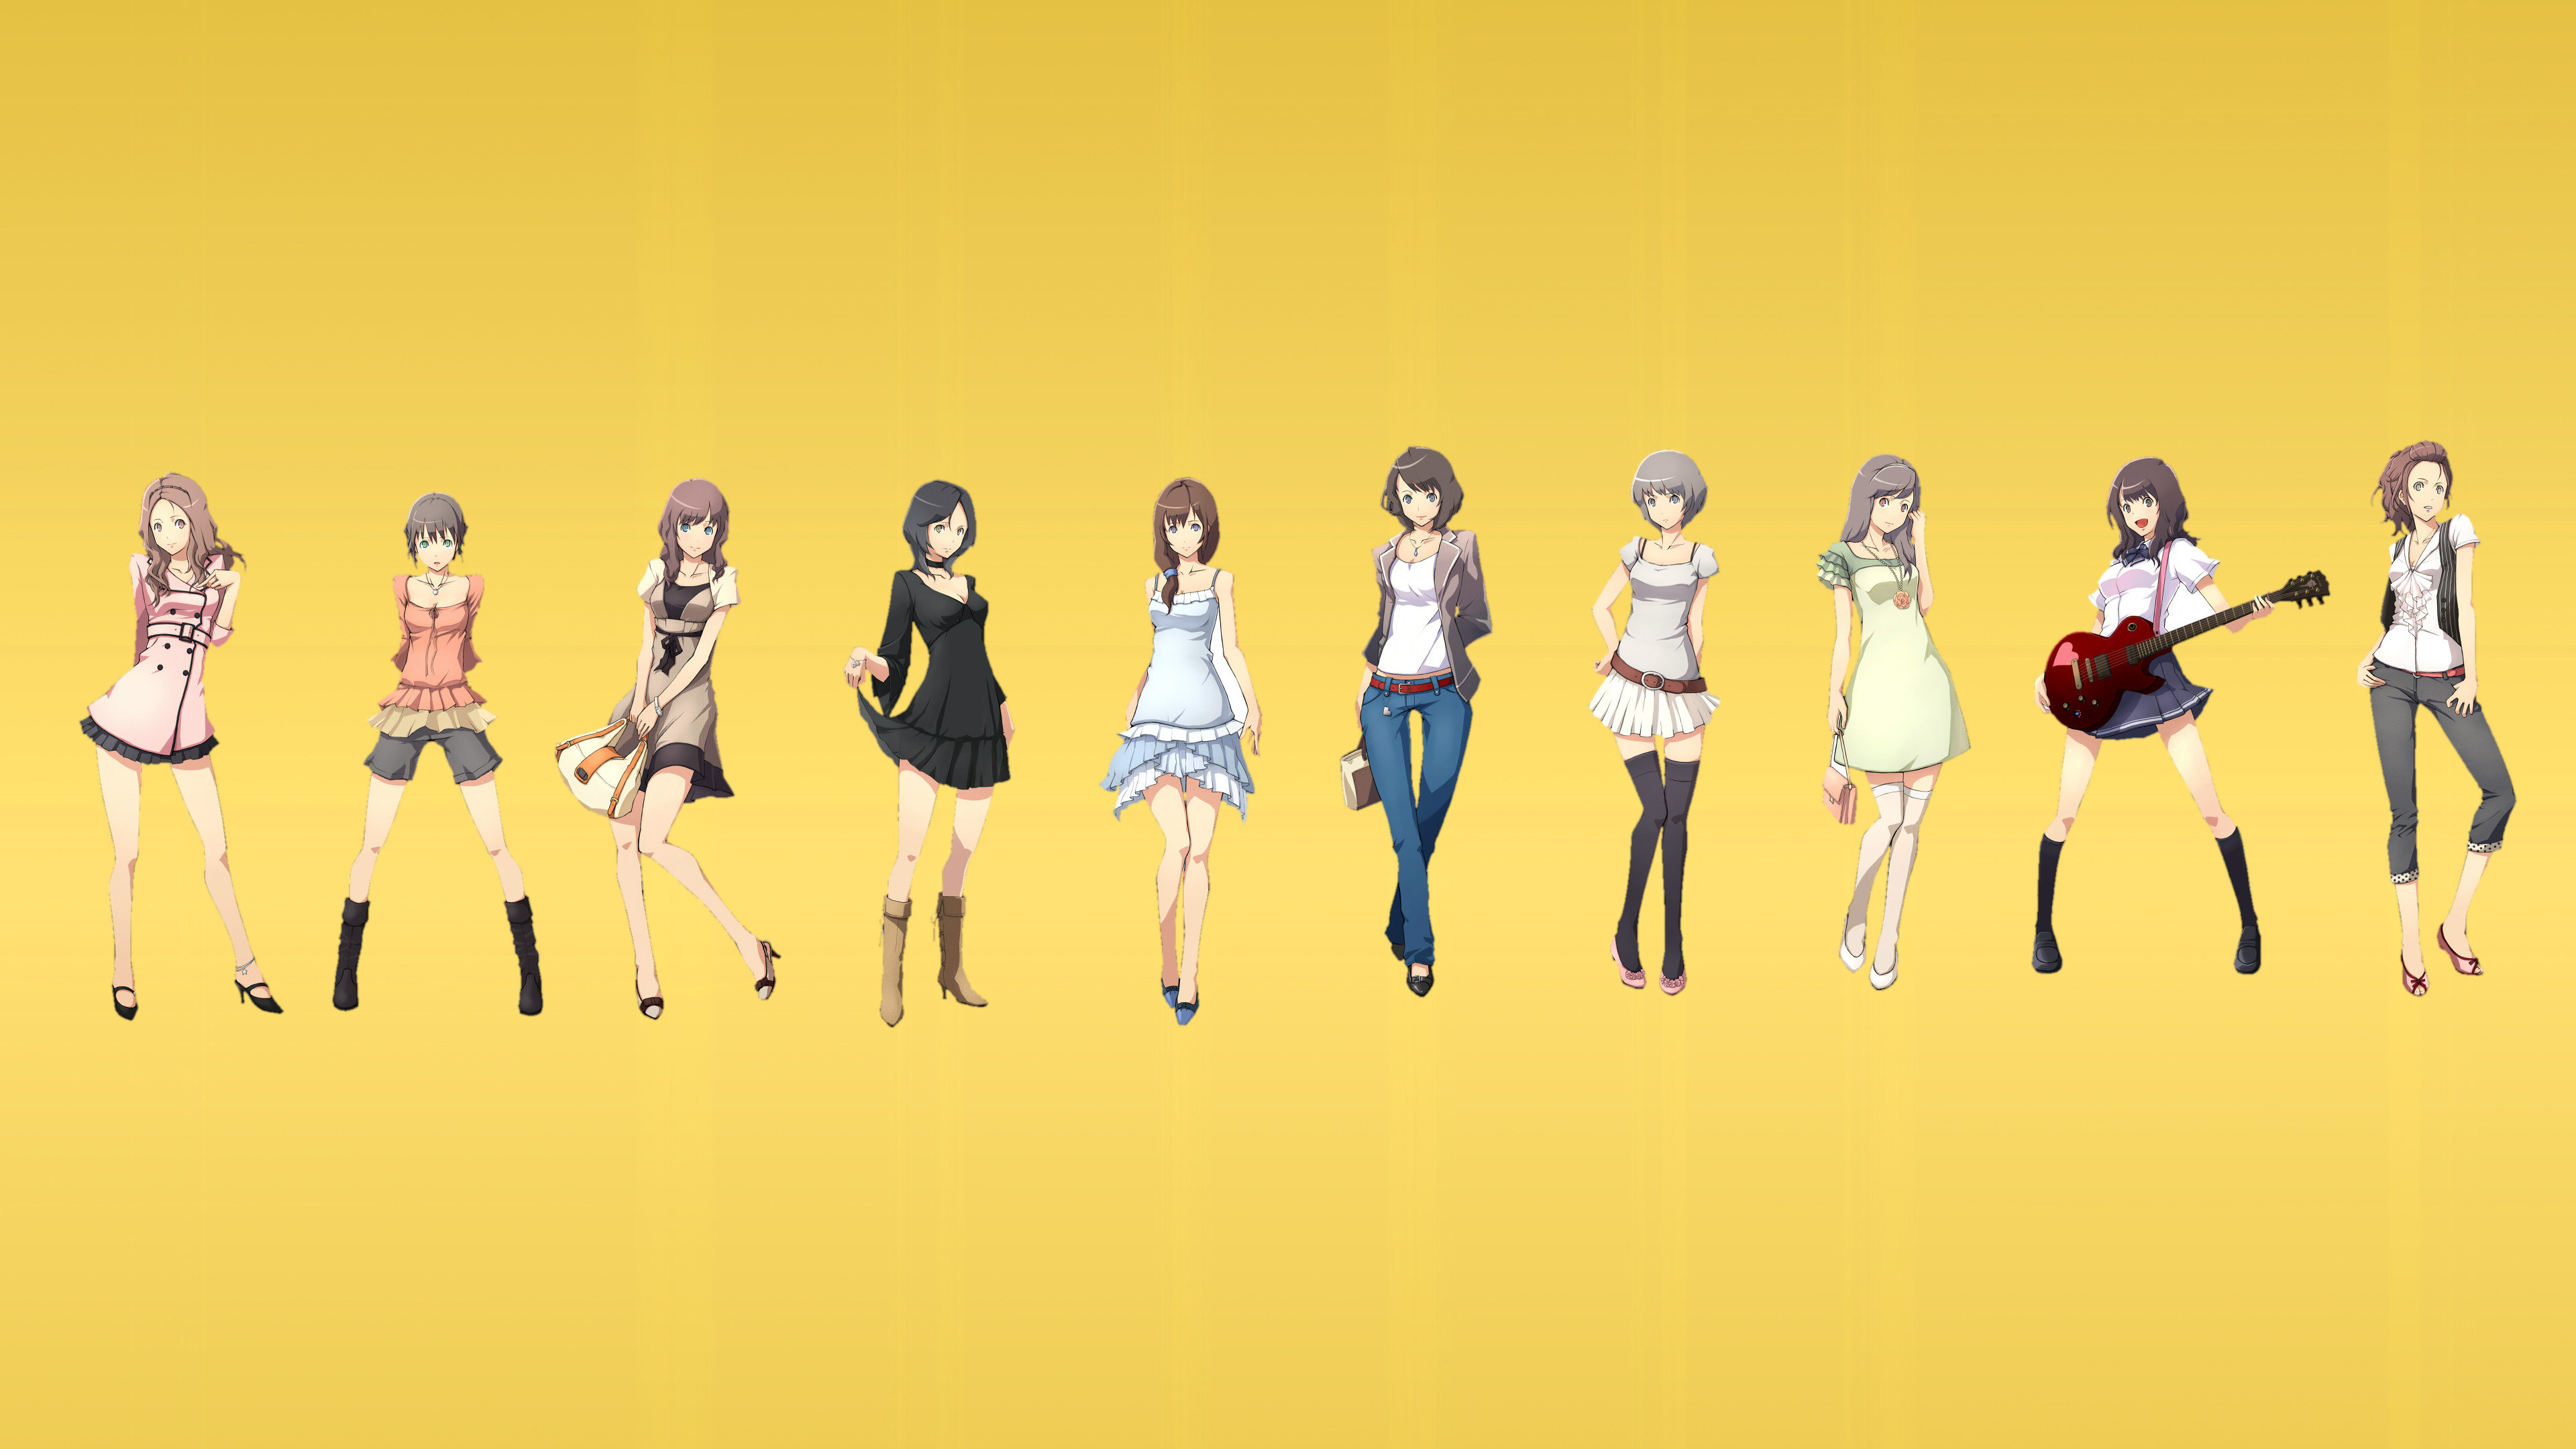 Anime Women Wallpapers 3840x2160 Ultra Hd 4k Desktop Backgrounds